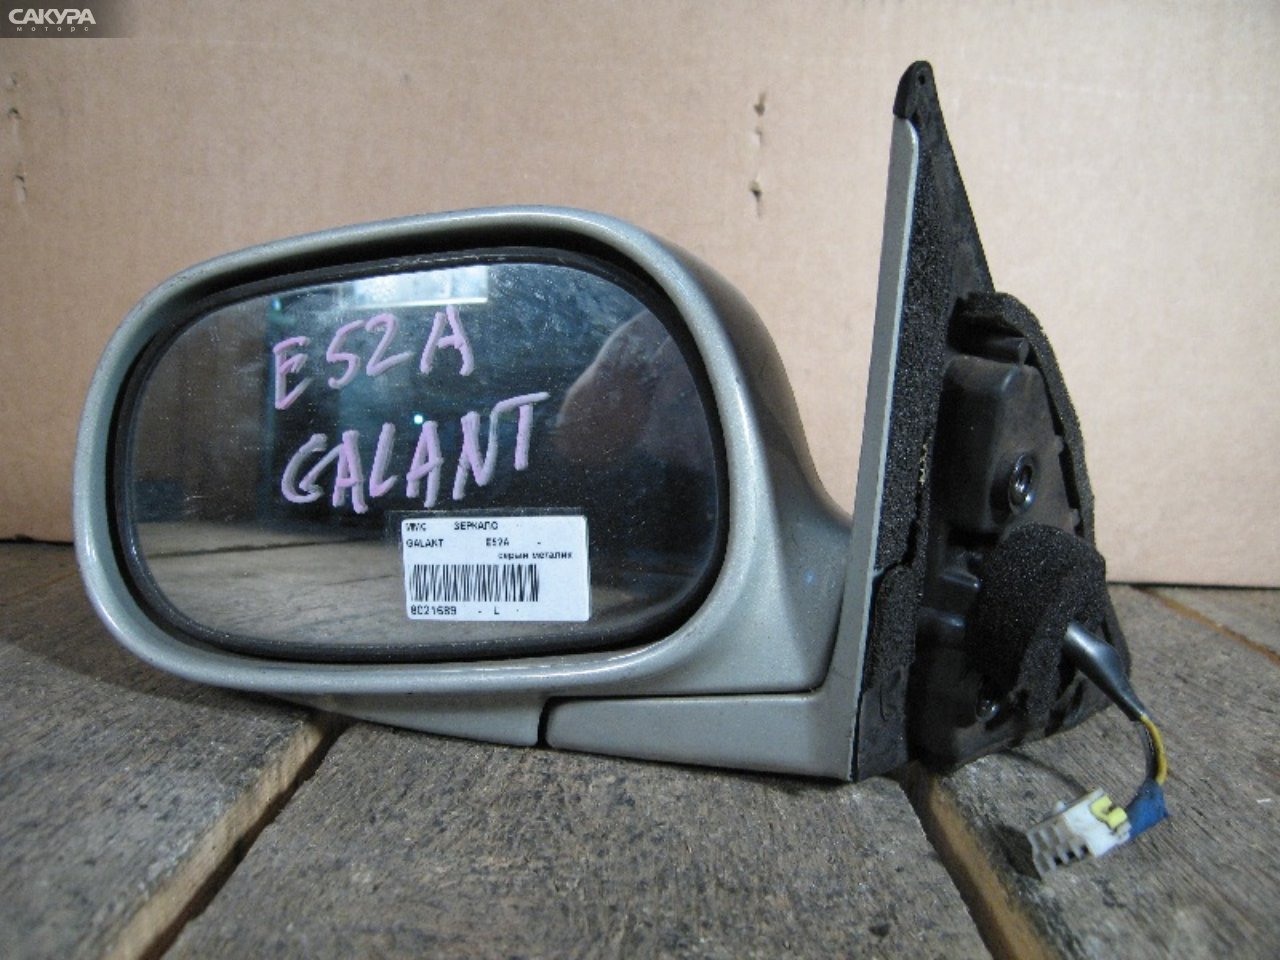 Зеркало боковое левое Mitsubishi Galant E52A: купить в Сакура Абакан.